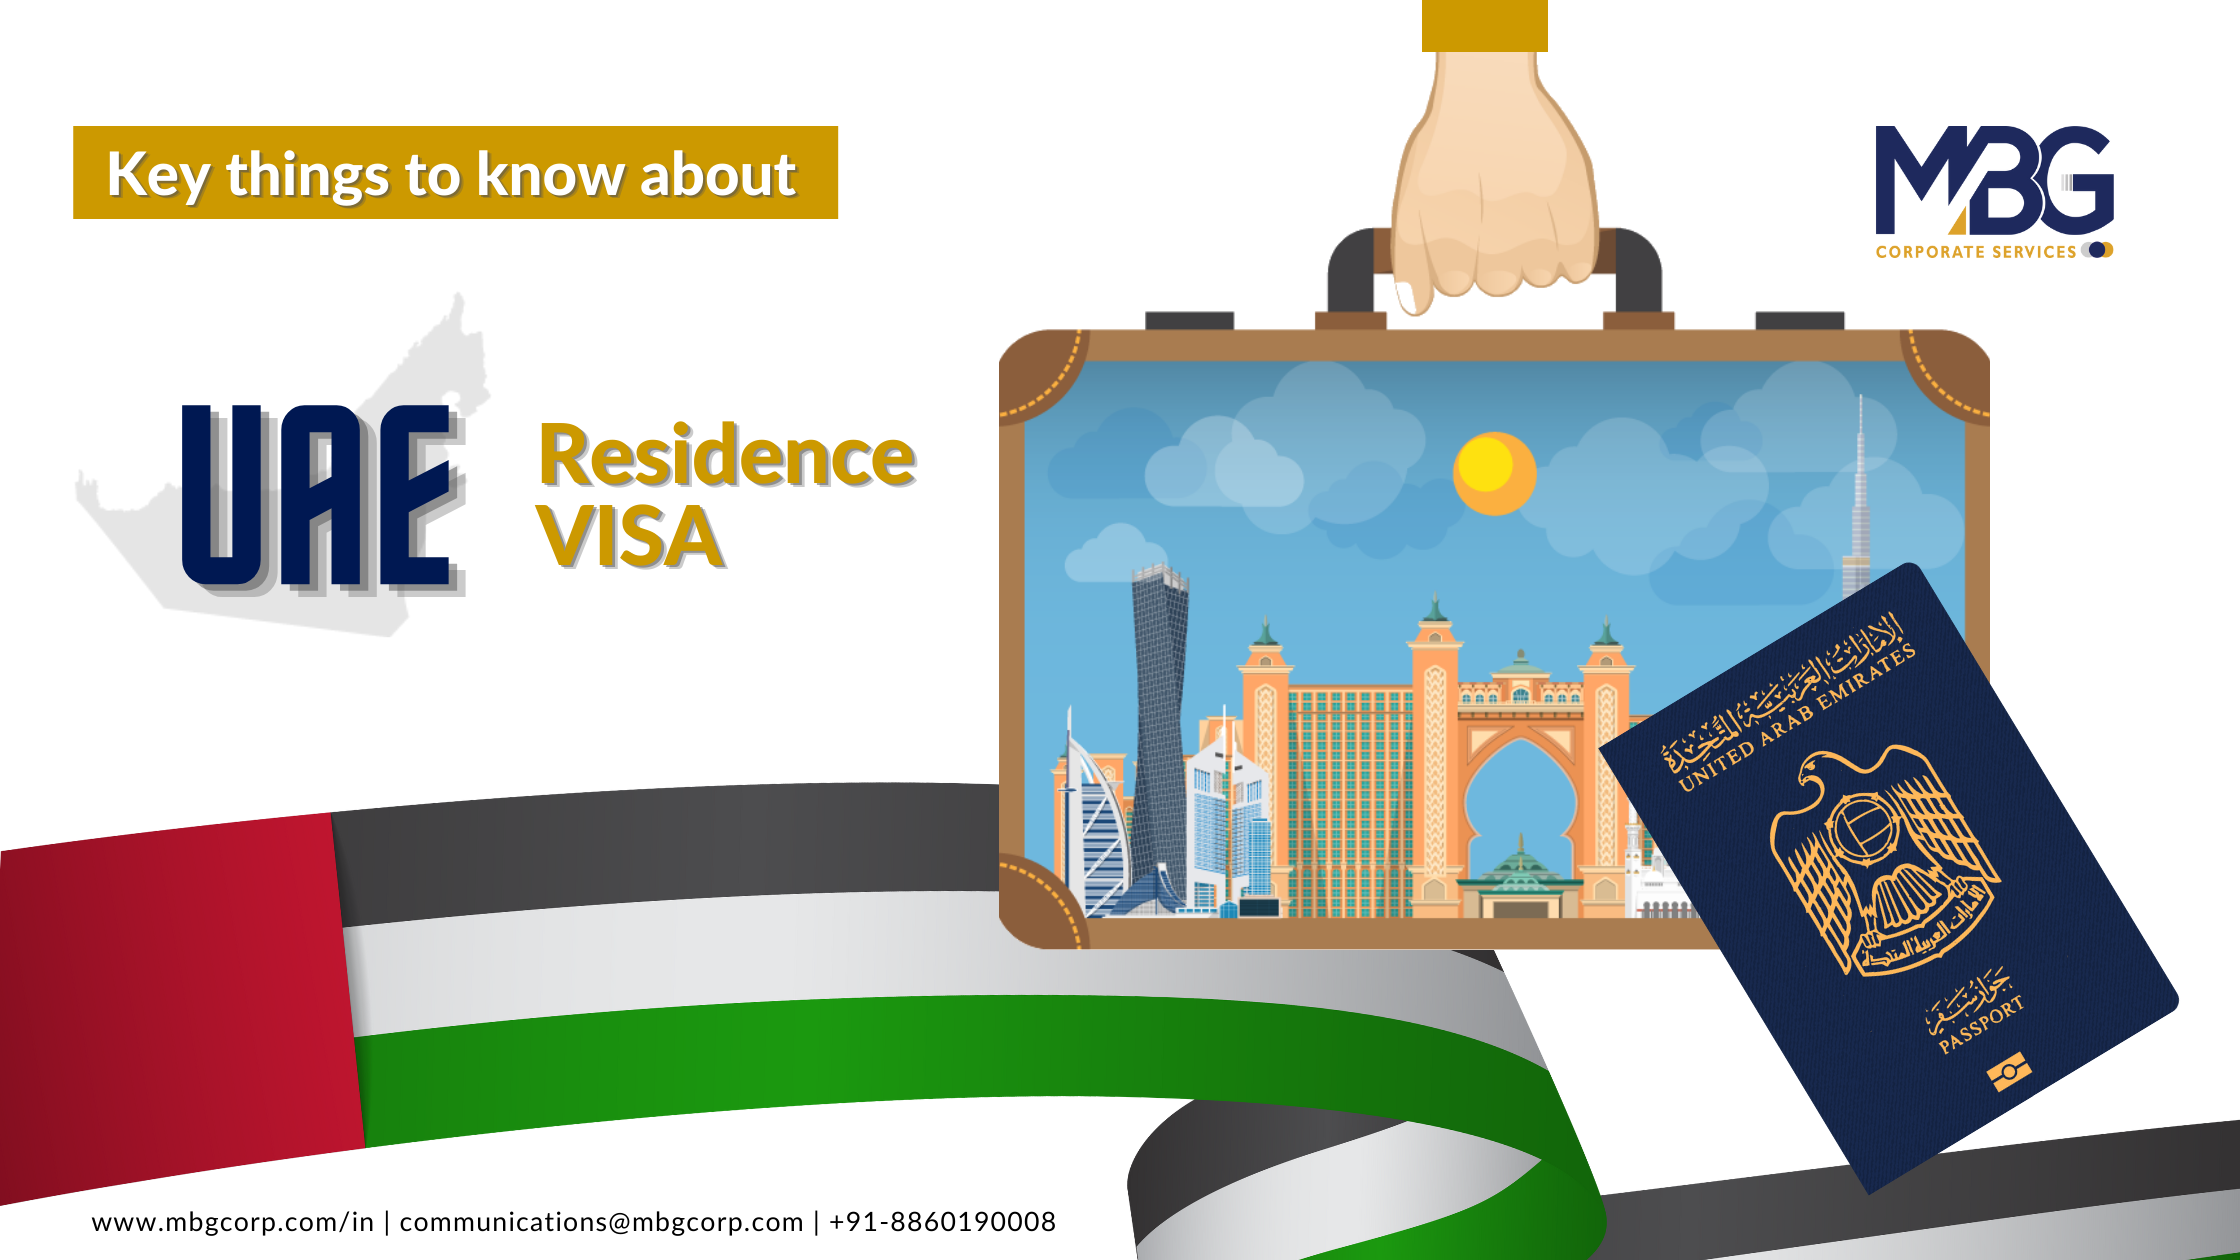 Uae visa. UAE Residence visa. Residental visa UAE. Visa service. United arab Emirates Residence visa number.